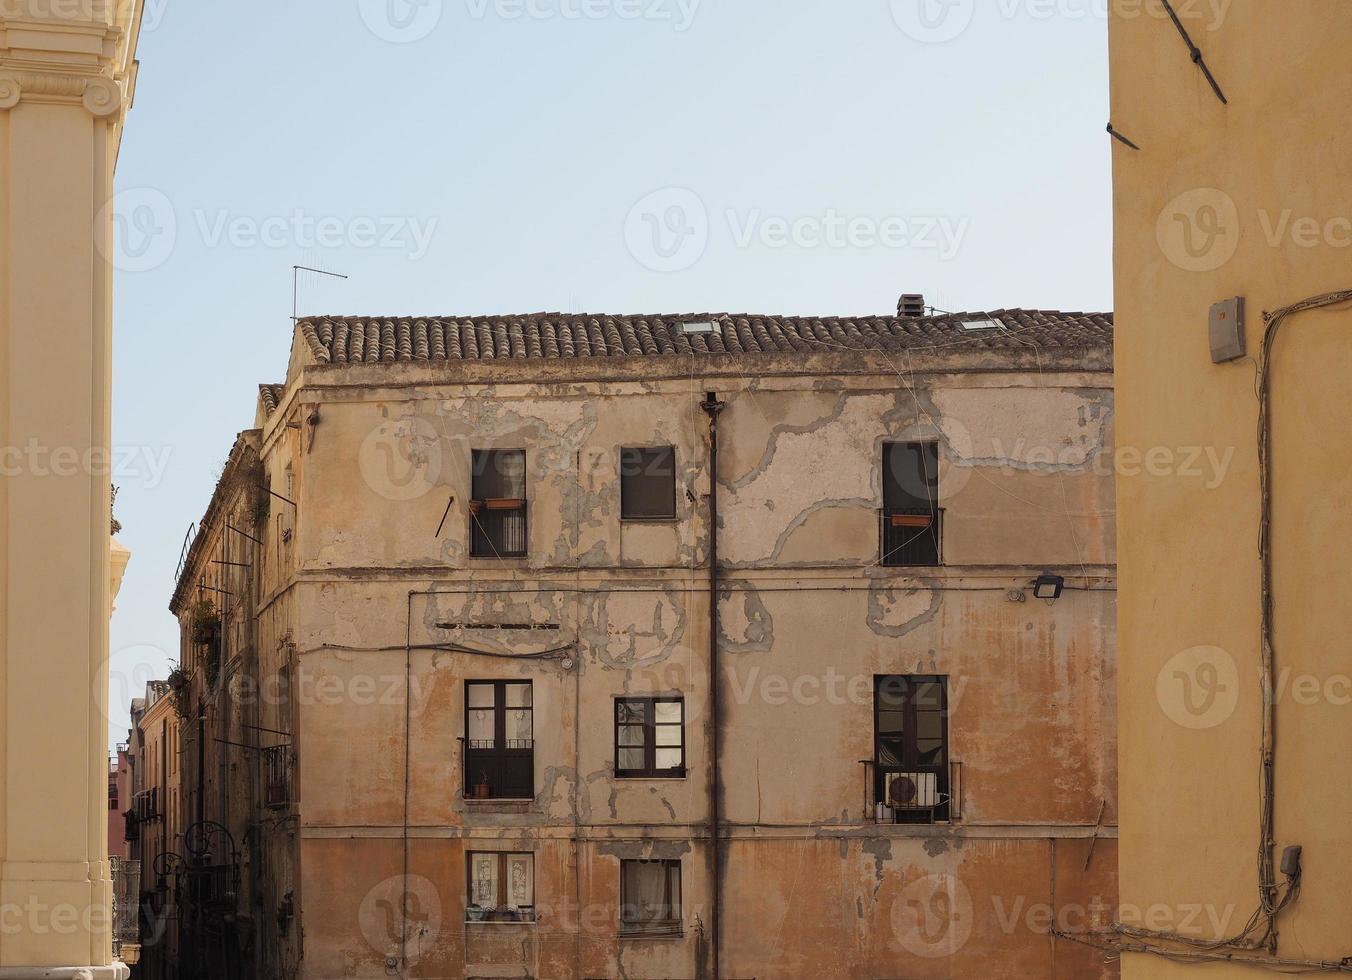 Castello-Viertel in Cagliari foto